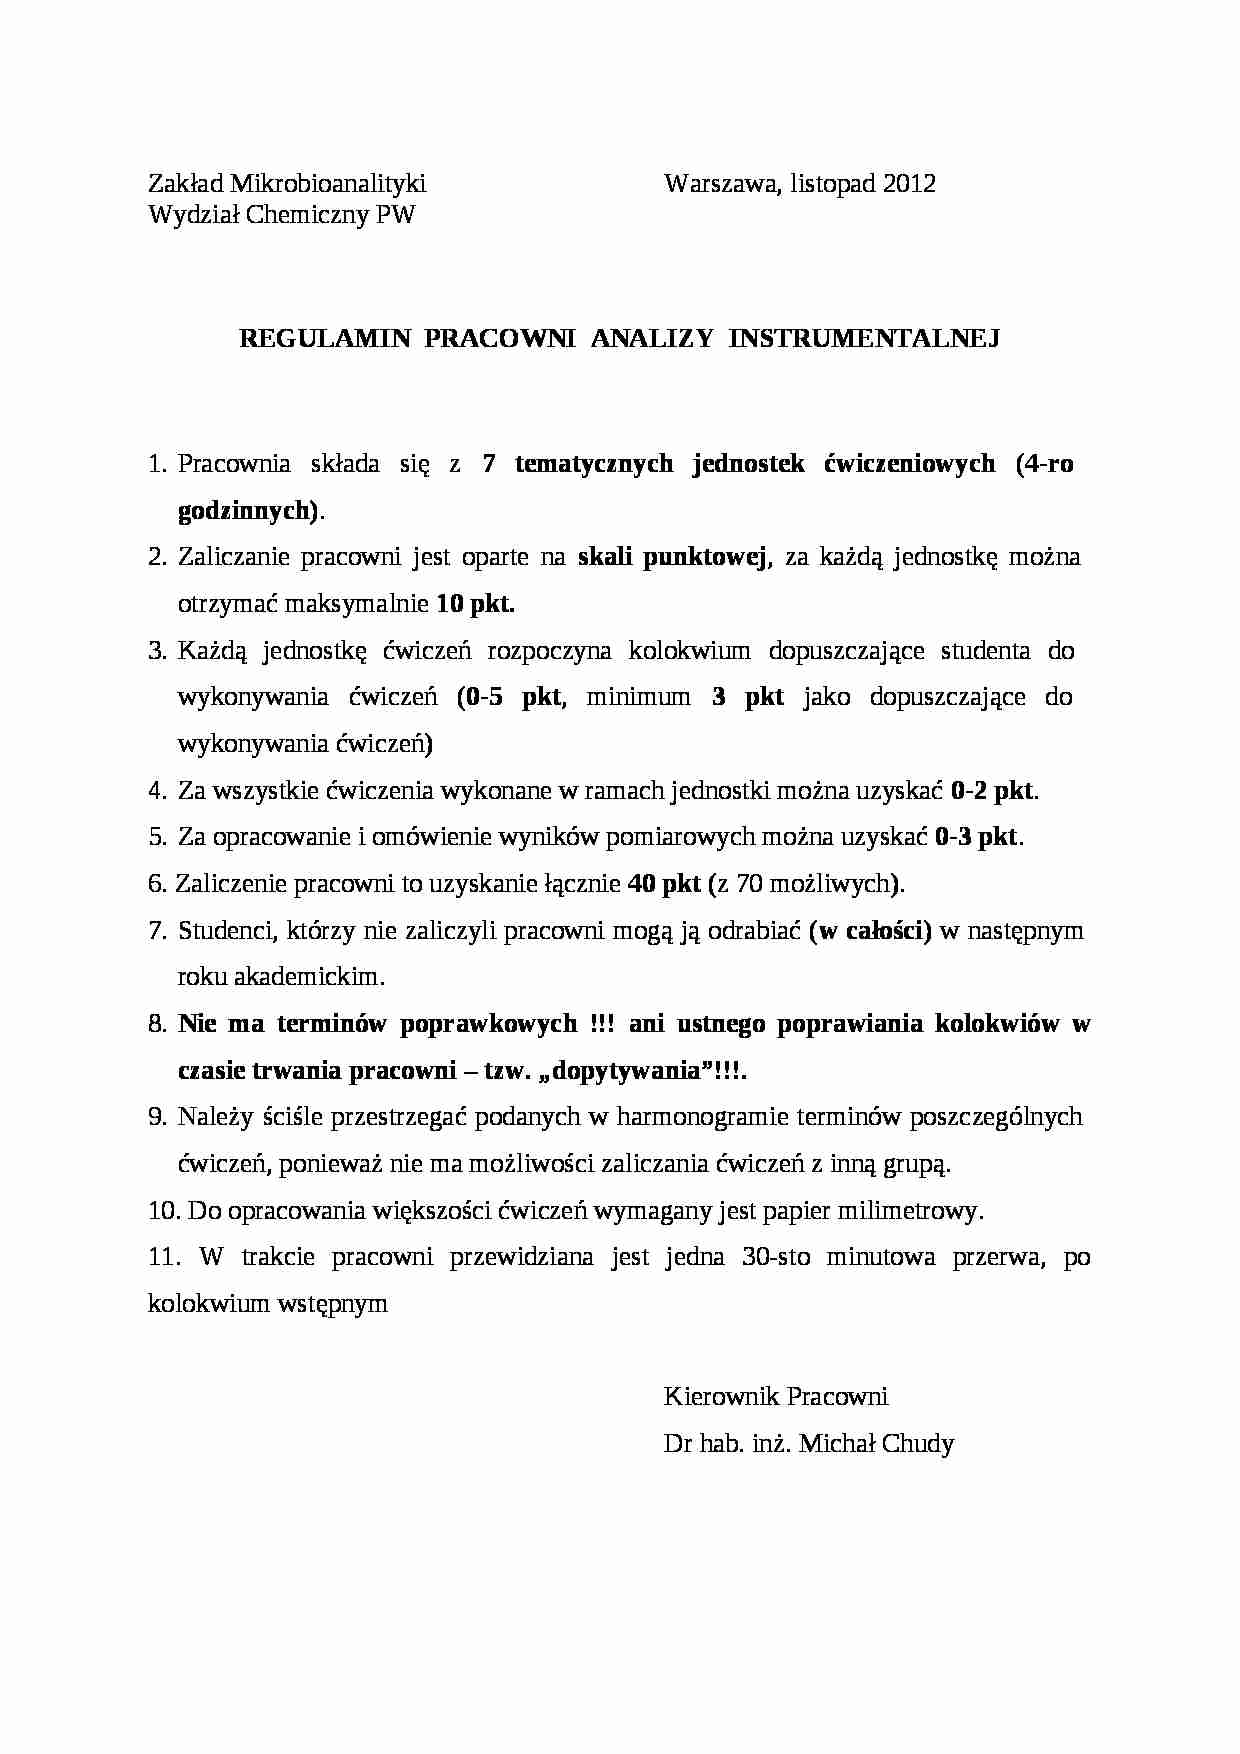 Regulamin pracowni analizy instrumentalnej - wykład - strona 1